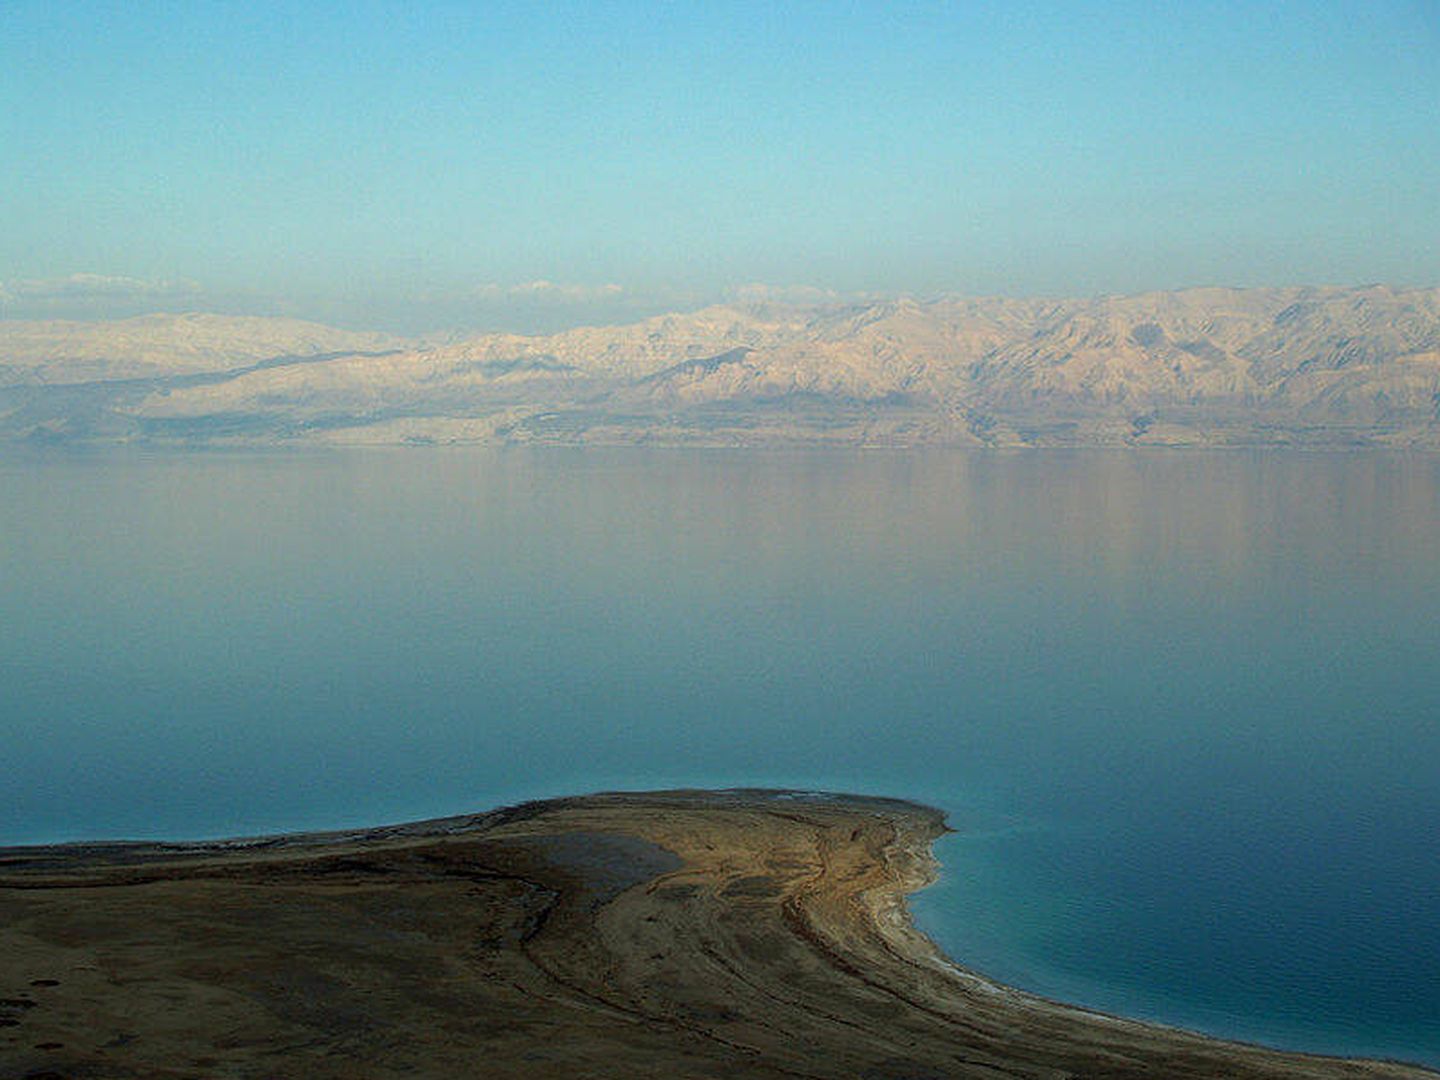 Fotografía panorámica del Mar Muerto. (Wikipedia)